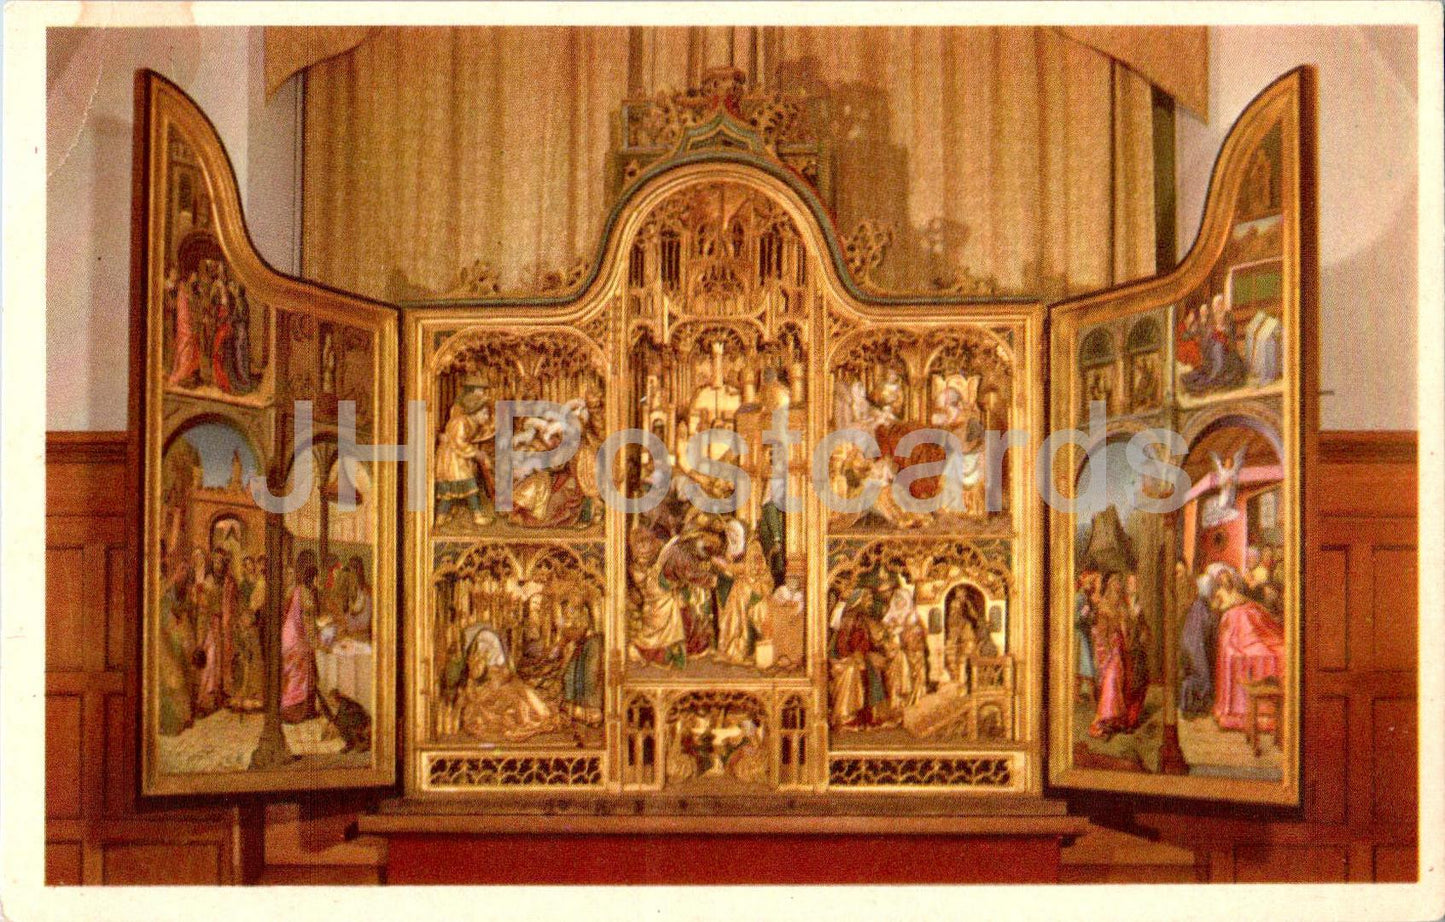 Skanella Kyrka - Altarskap - Altar - Kirche - 2084 - alte Postkarte - Schweden - unbenutzt 